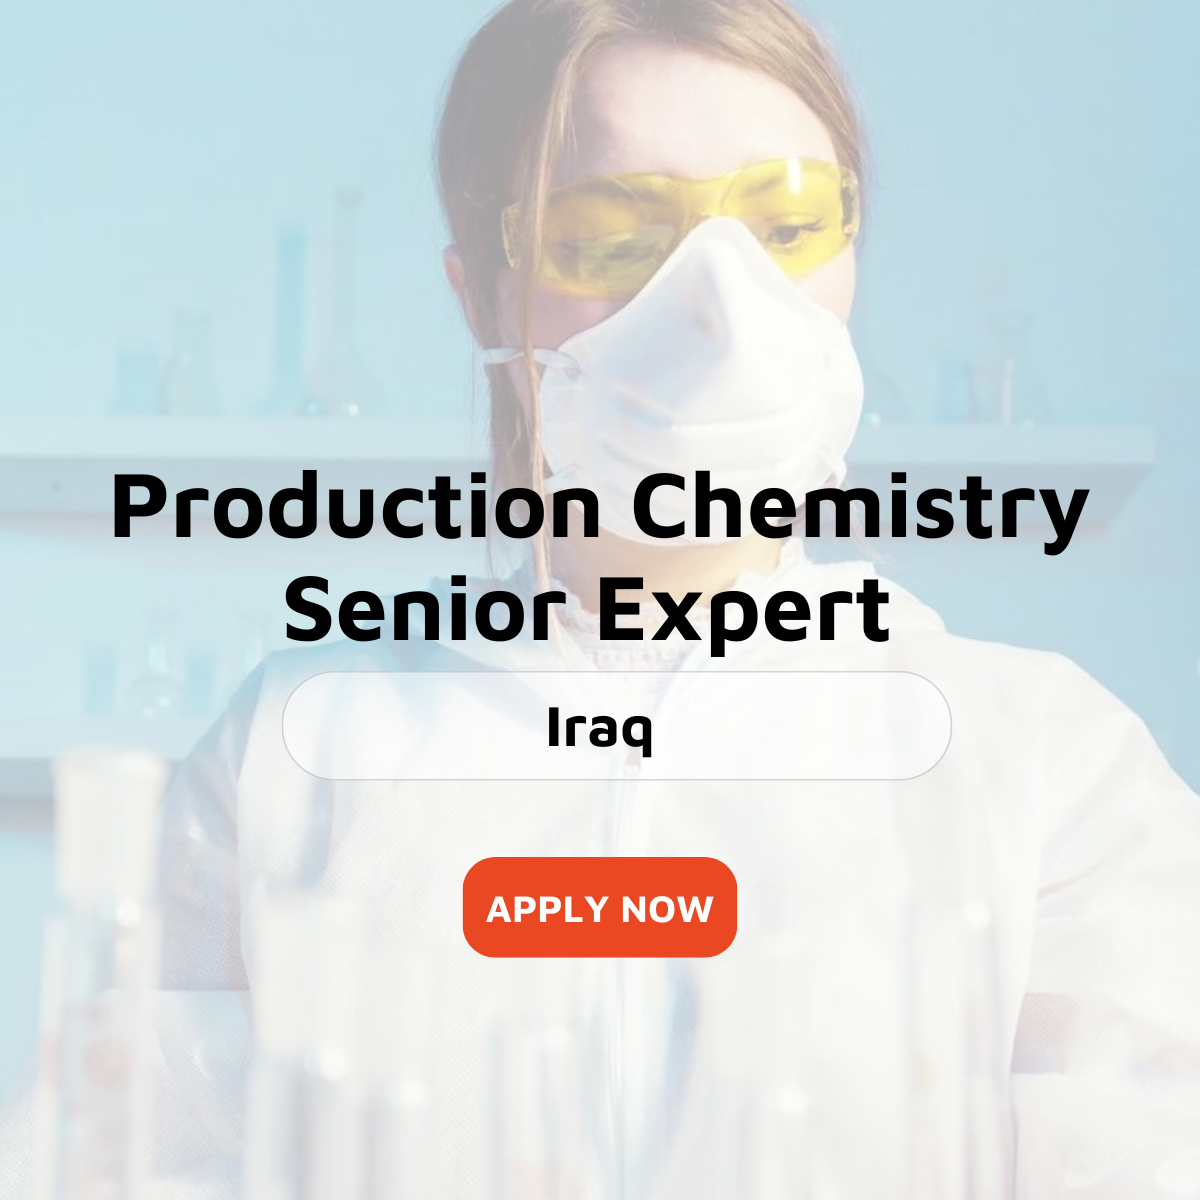 Production Chemistry Senior Expert